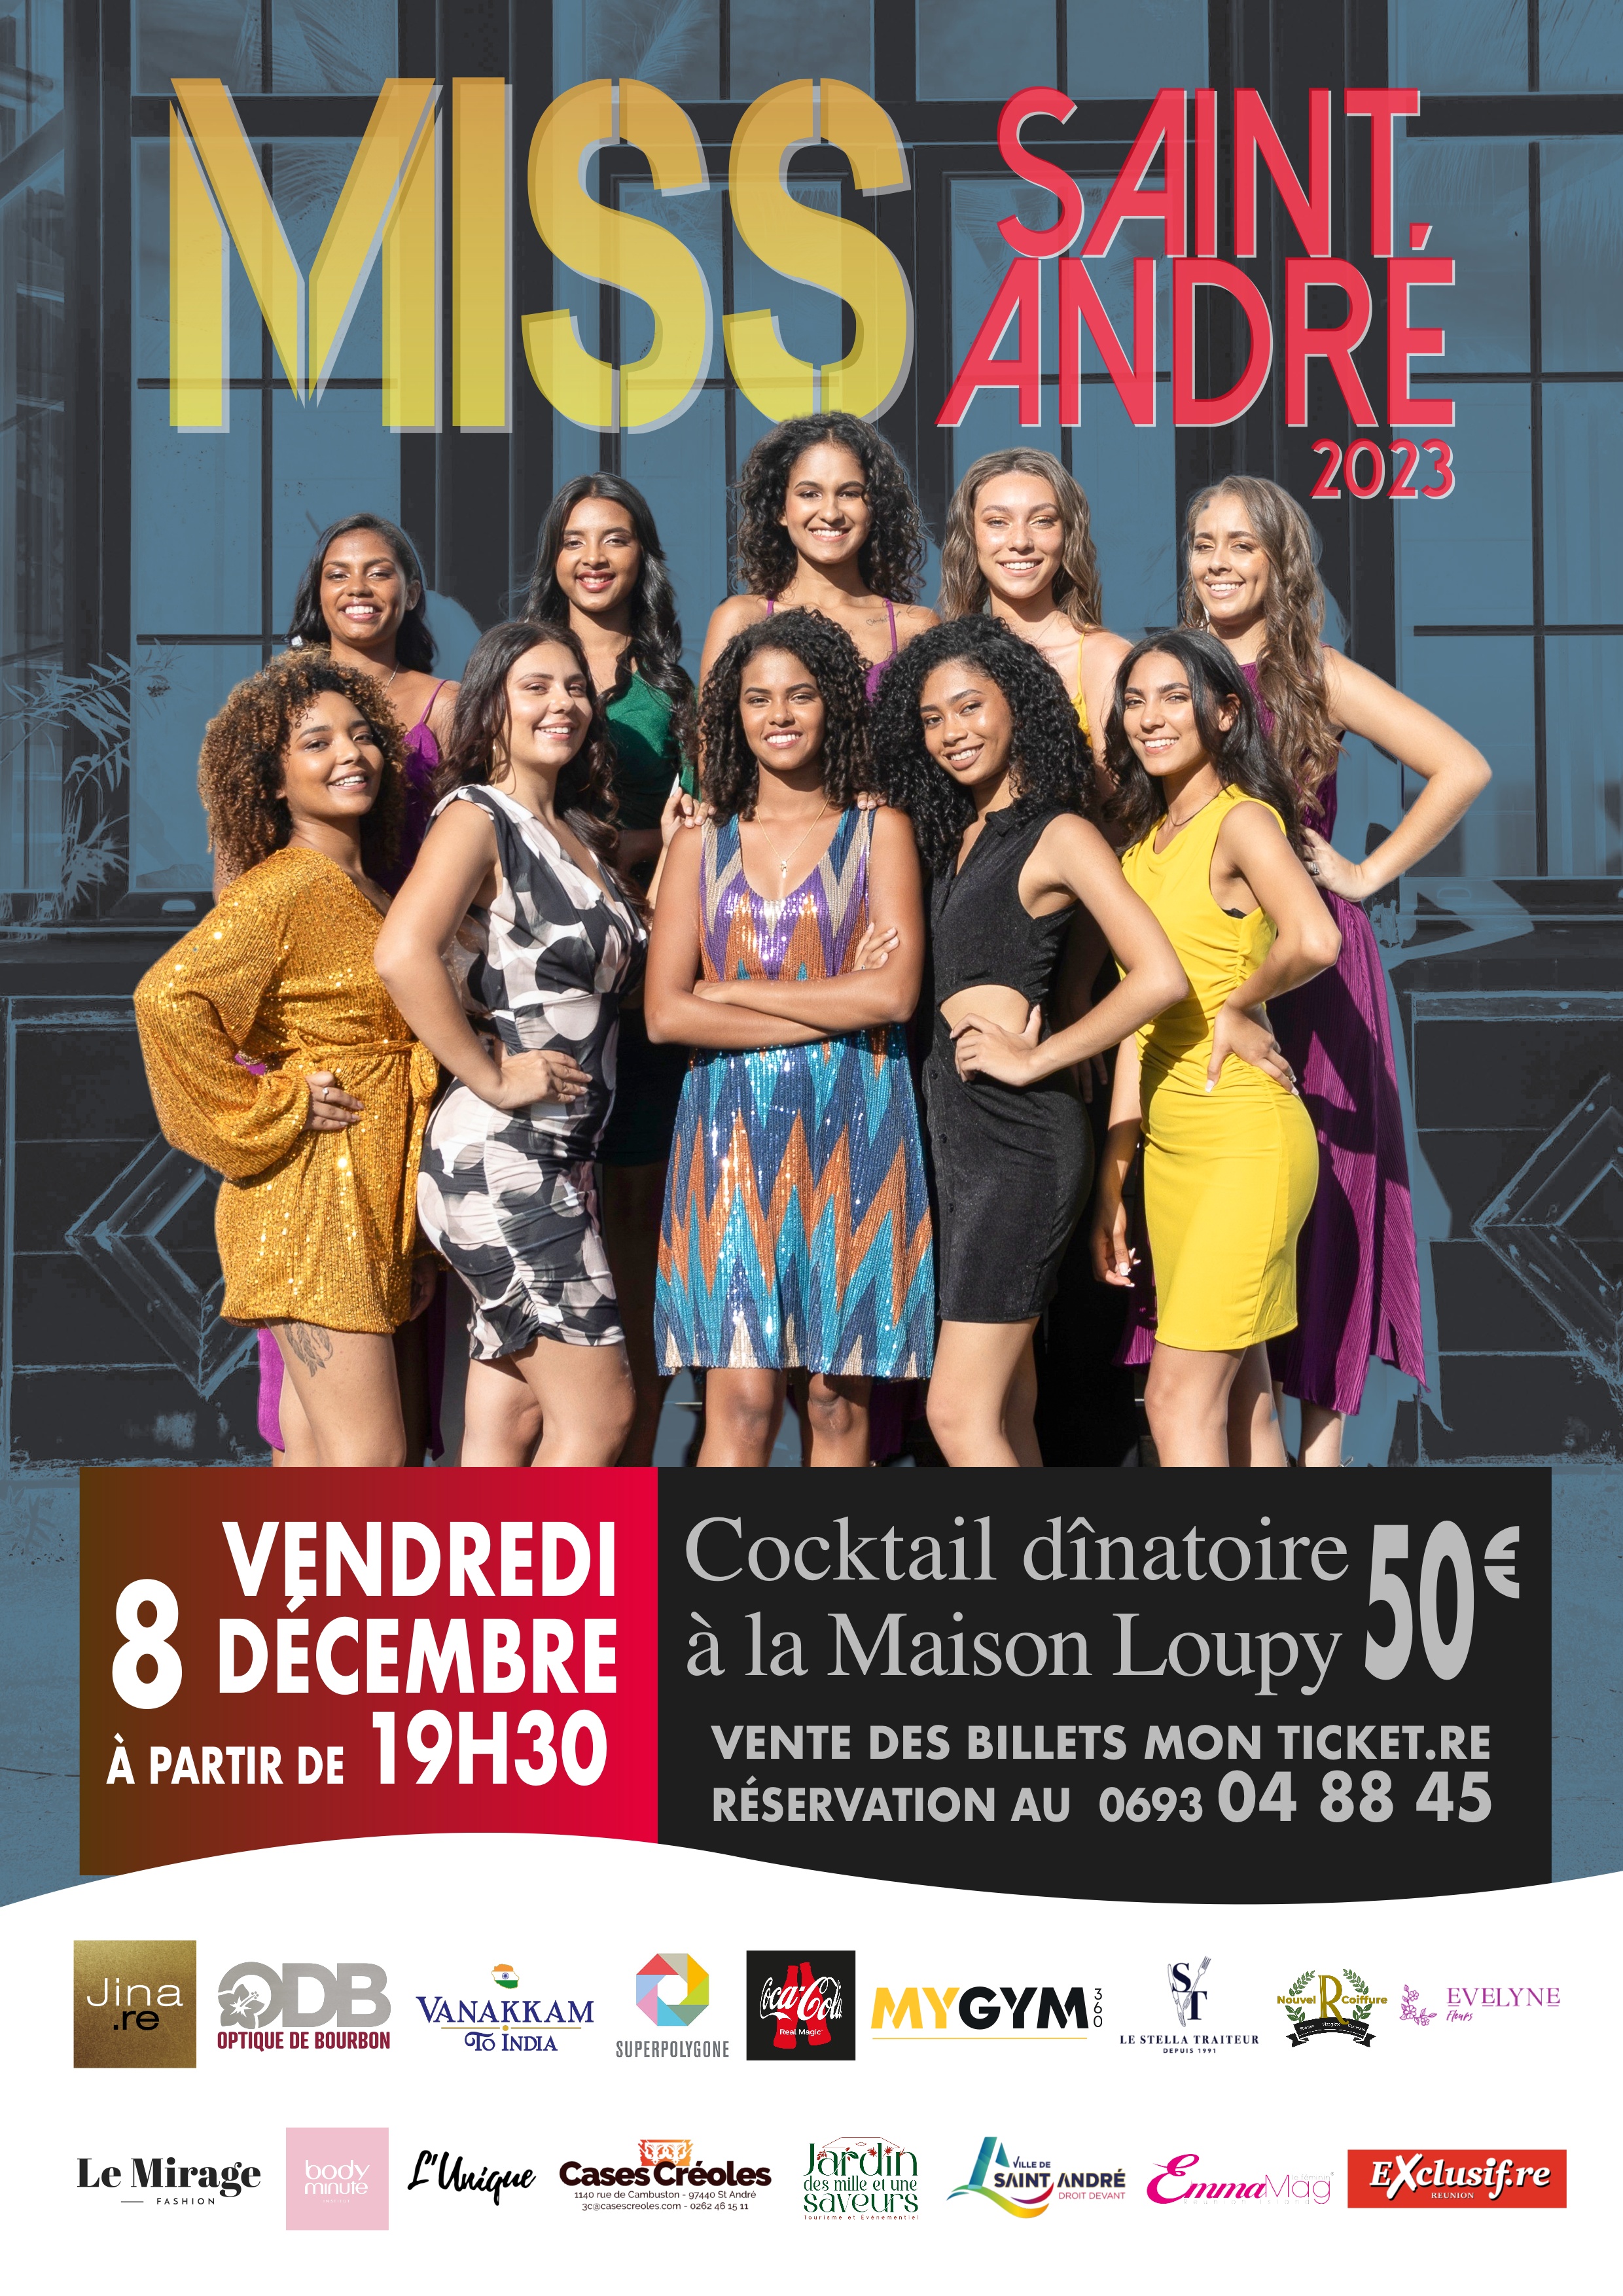 Miss Saint-André 2023: découvrez les 10 candidates